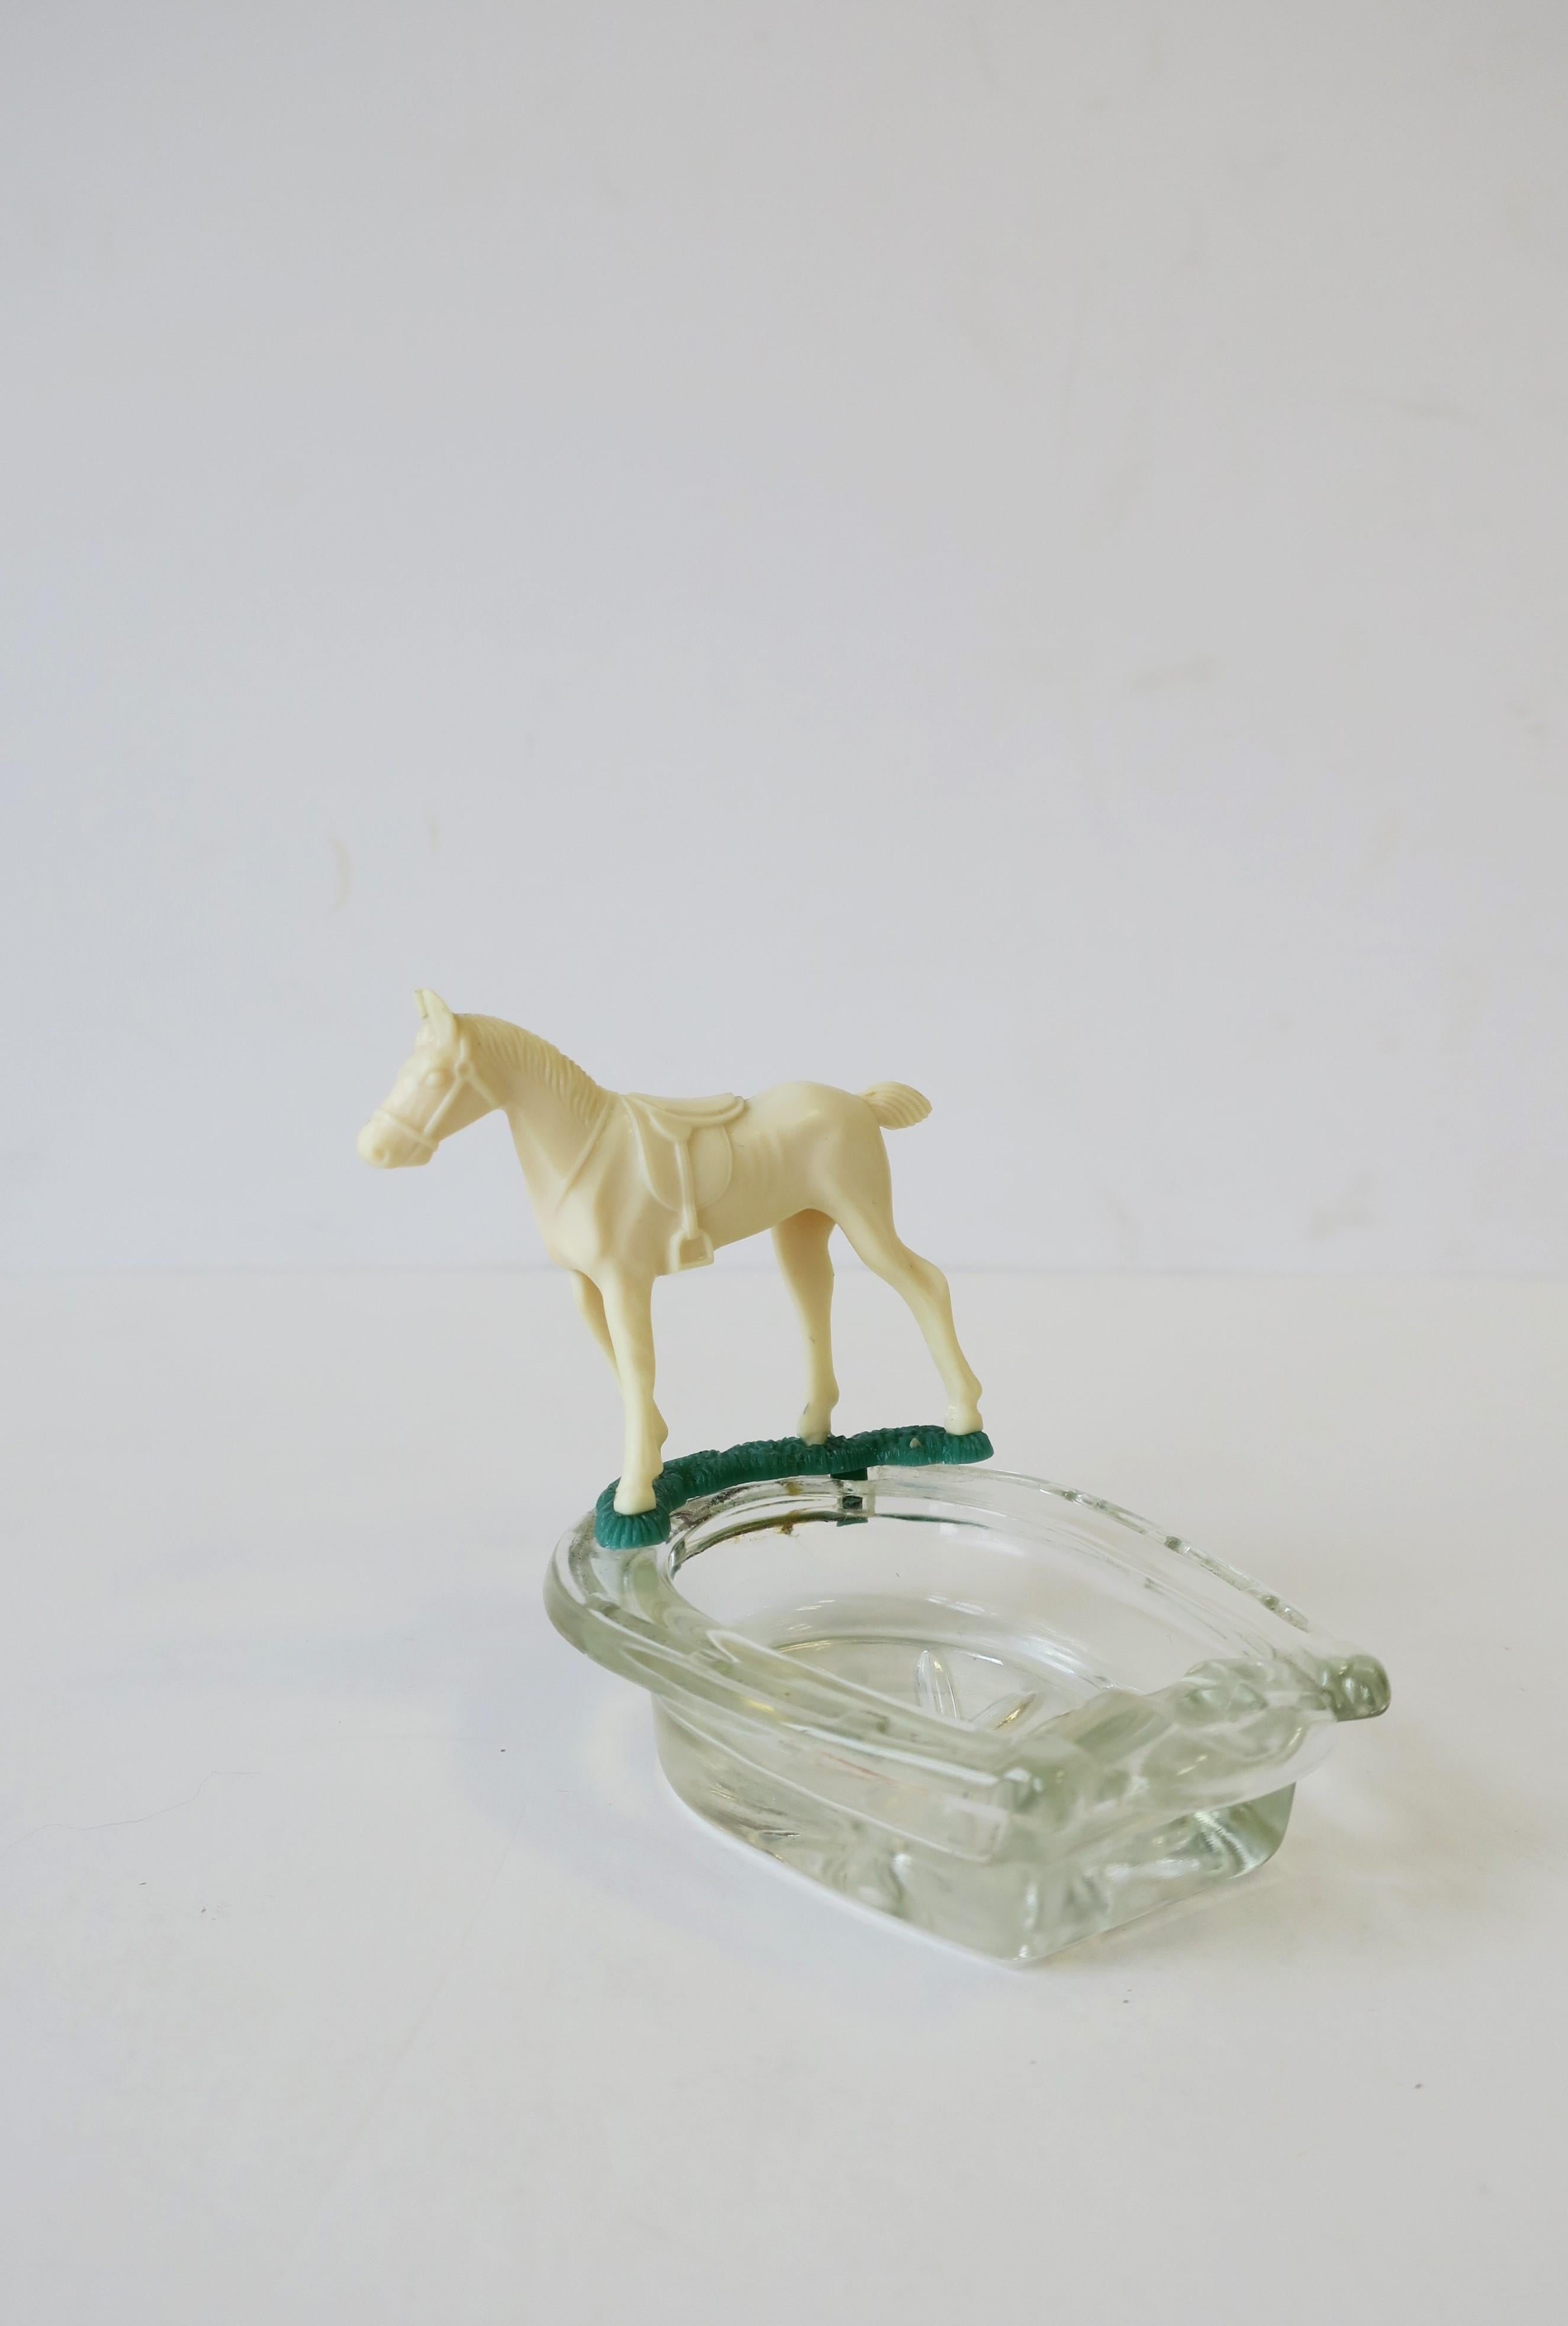 Equine Horse and Horseshoe Trinket Jewelry Dish Ashtray 1